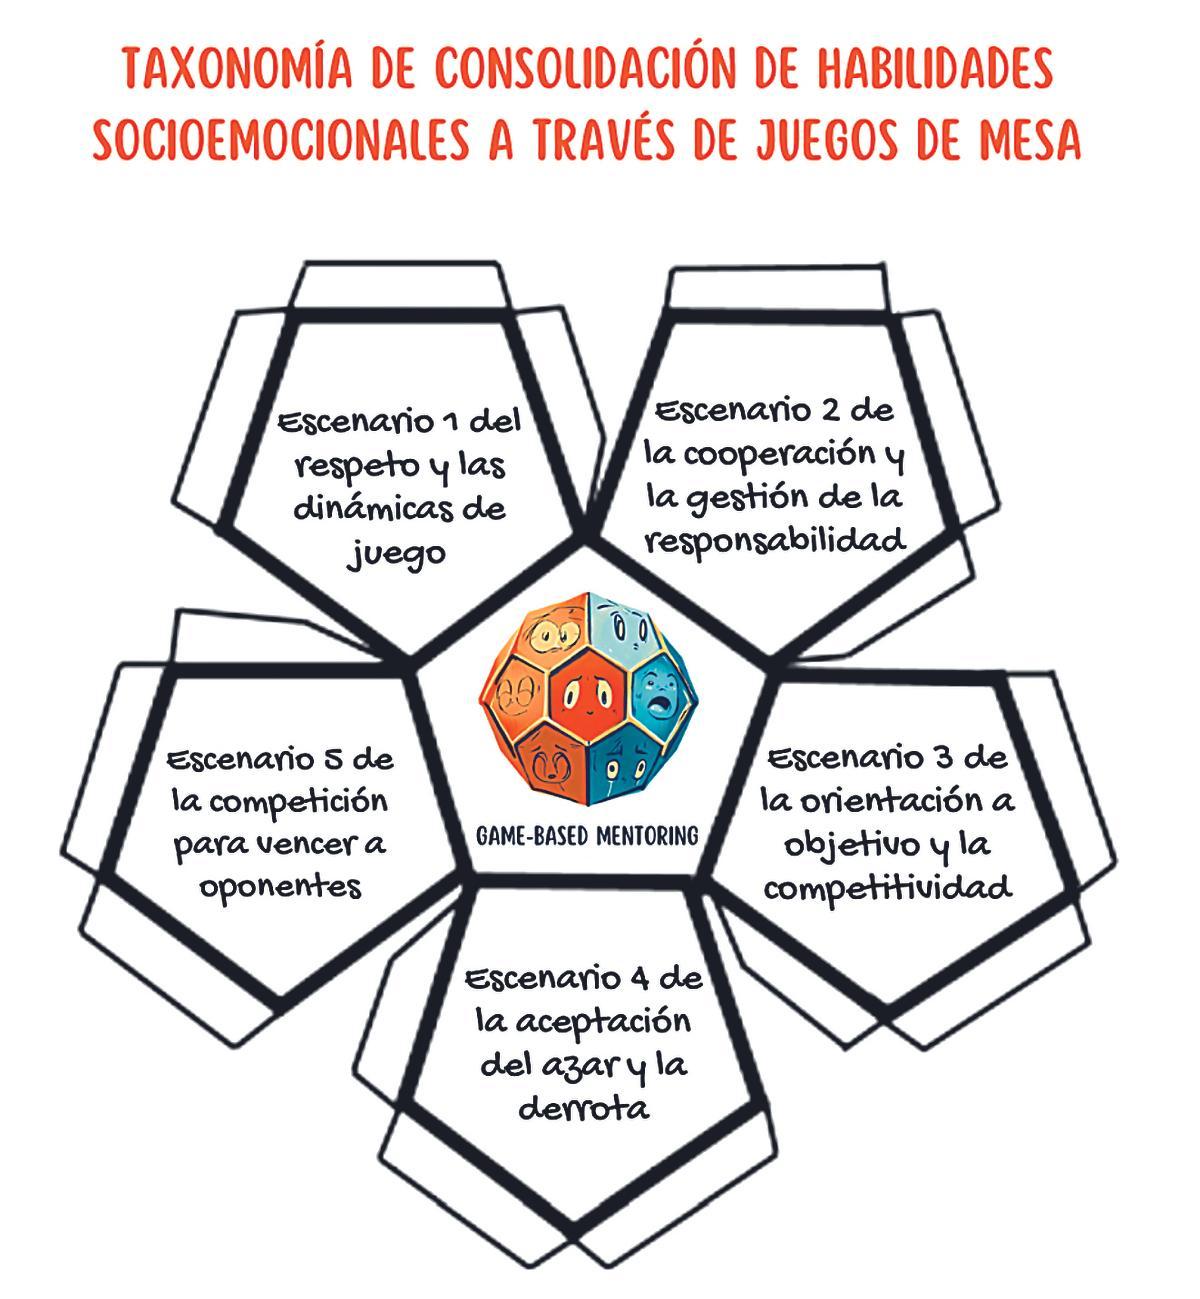 Taxonomía de consolidación de habilidades socioemocionales a través de juegos de mesa, elaborada por los docentes Xabier Rey y Miguel Lois.